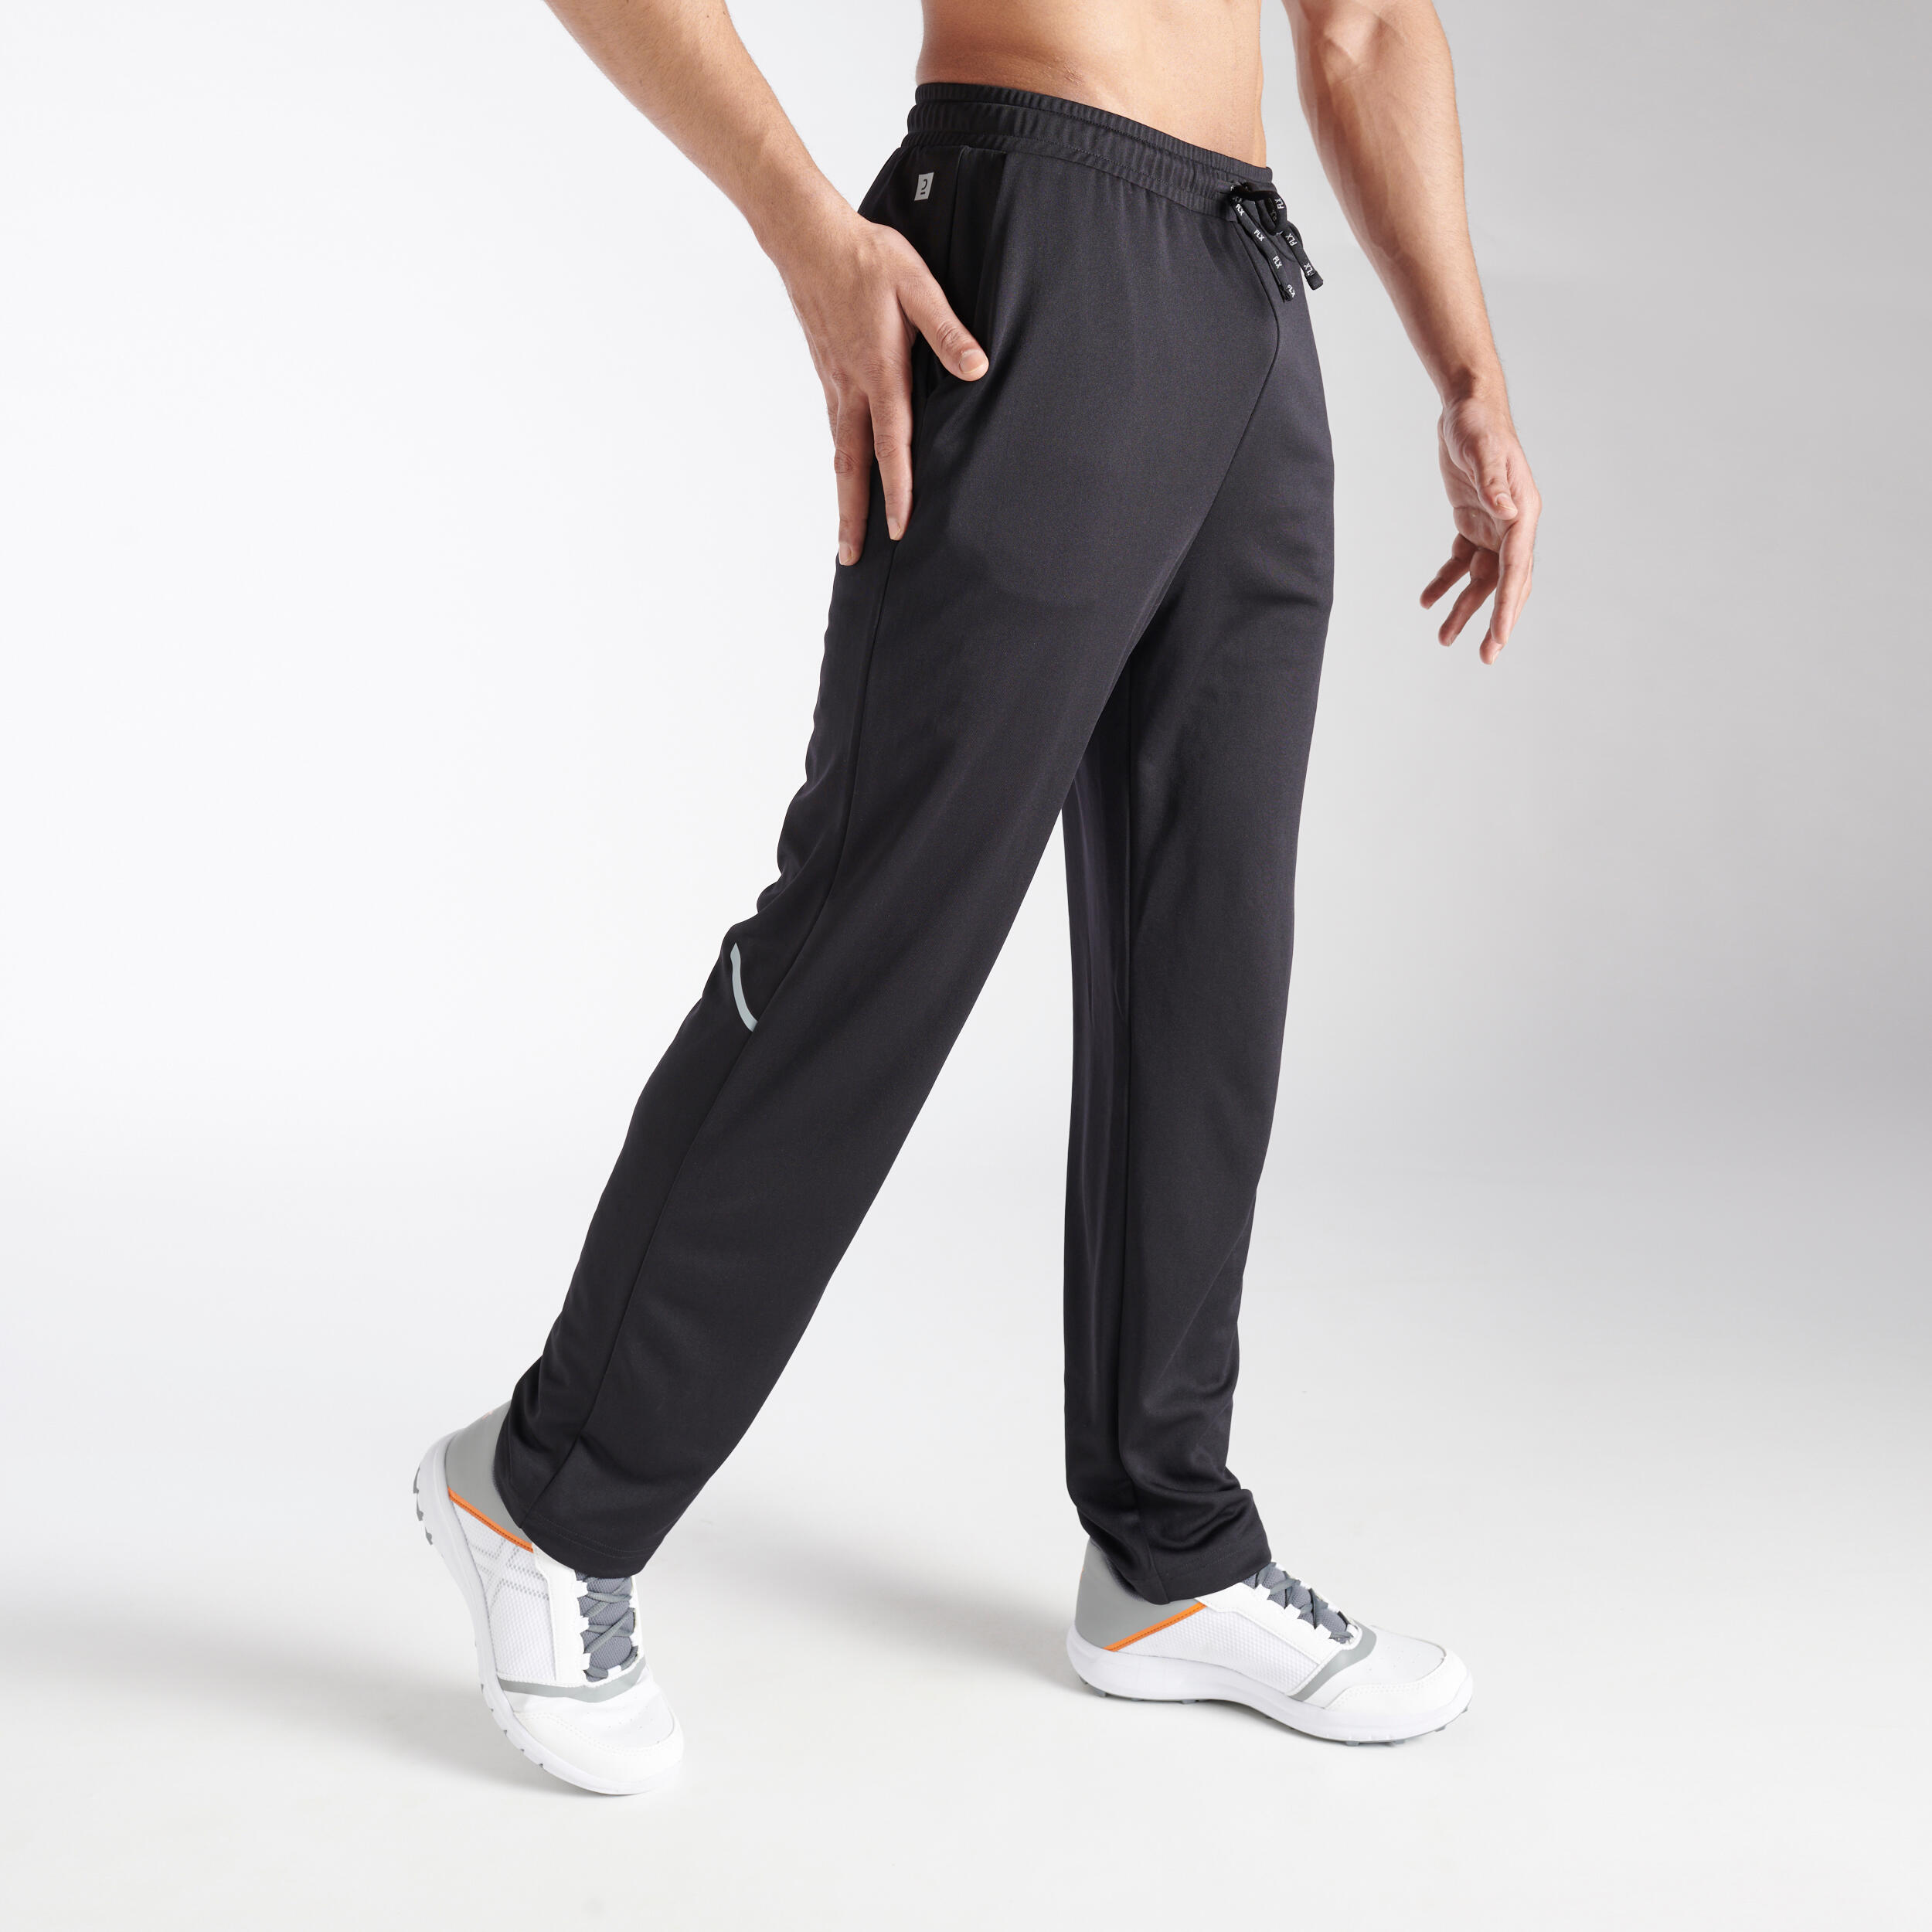 Buy Beige Trousers  Pants for Men by hangup Online  Ajiocom